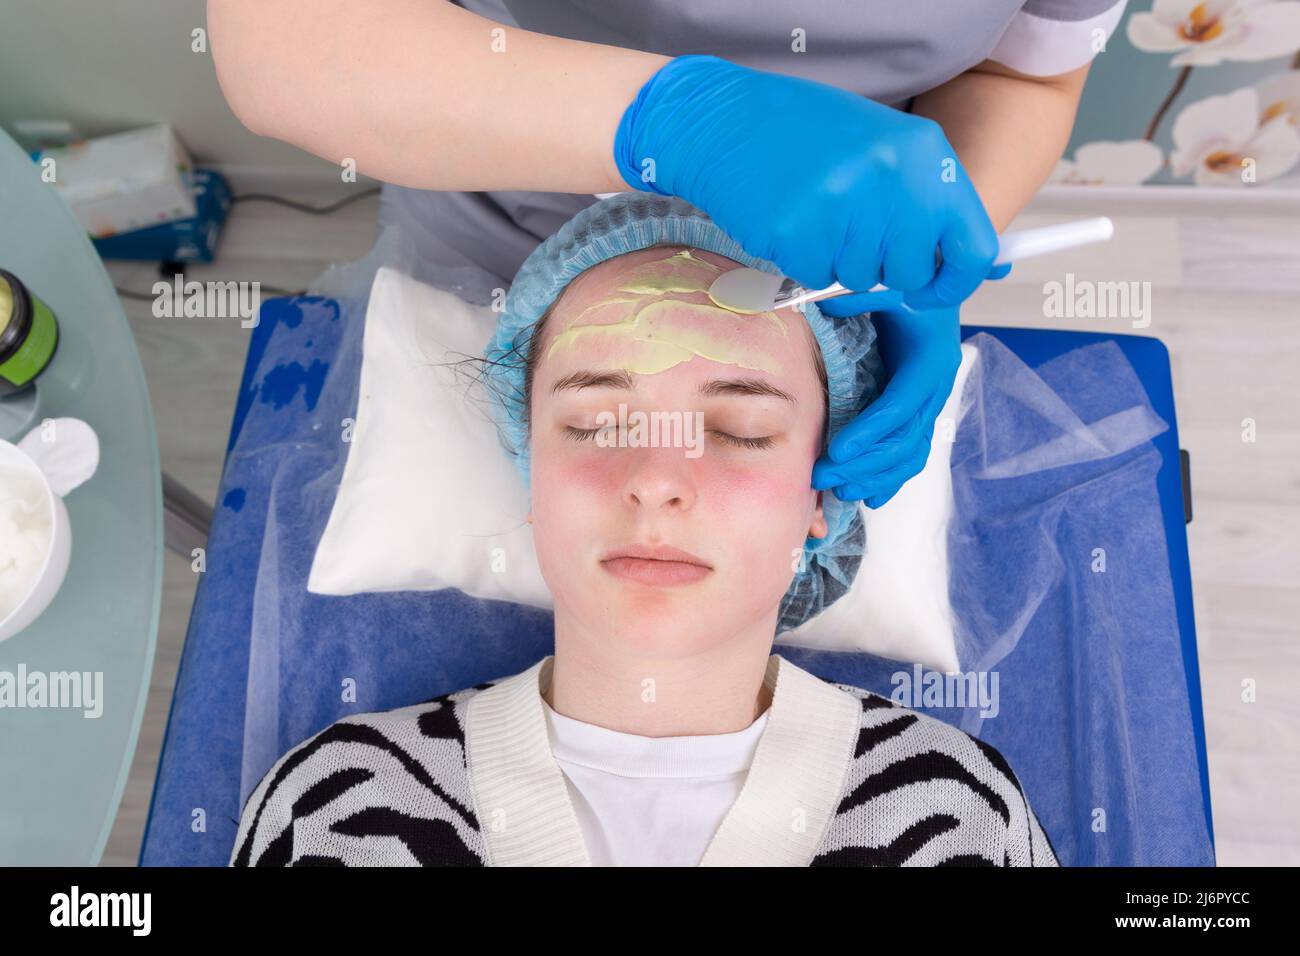 Le cosmétologue applique un masque d'alginate avec une spatule sur le visage de la femme. Soin du visage et traitement anti-âge. Cosmétologie et soin professionnel de la peau du visage Banque D'Images